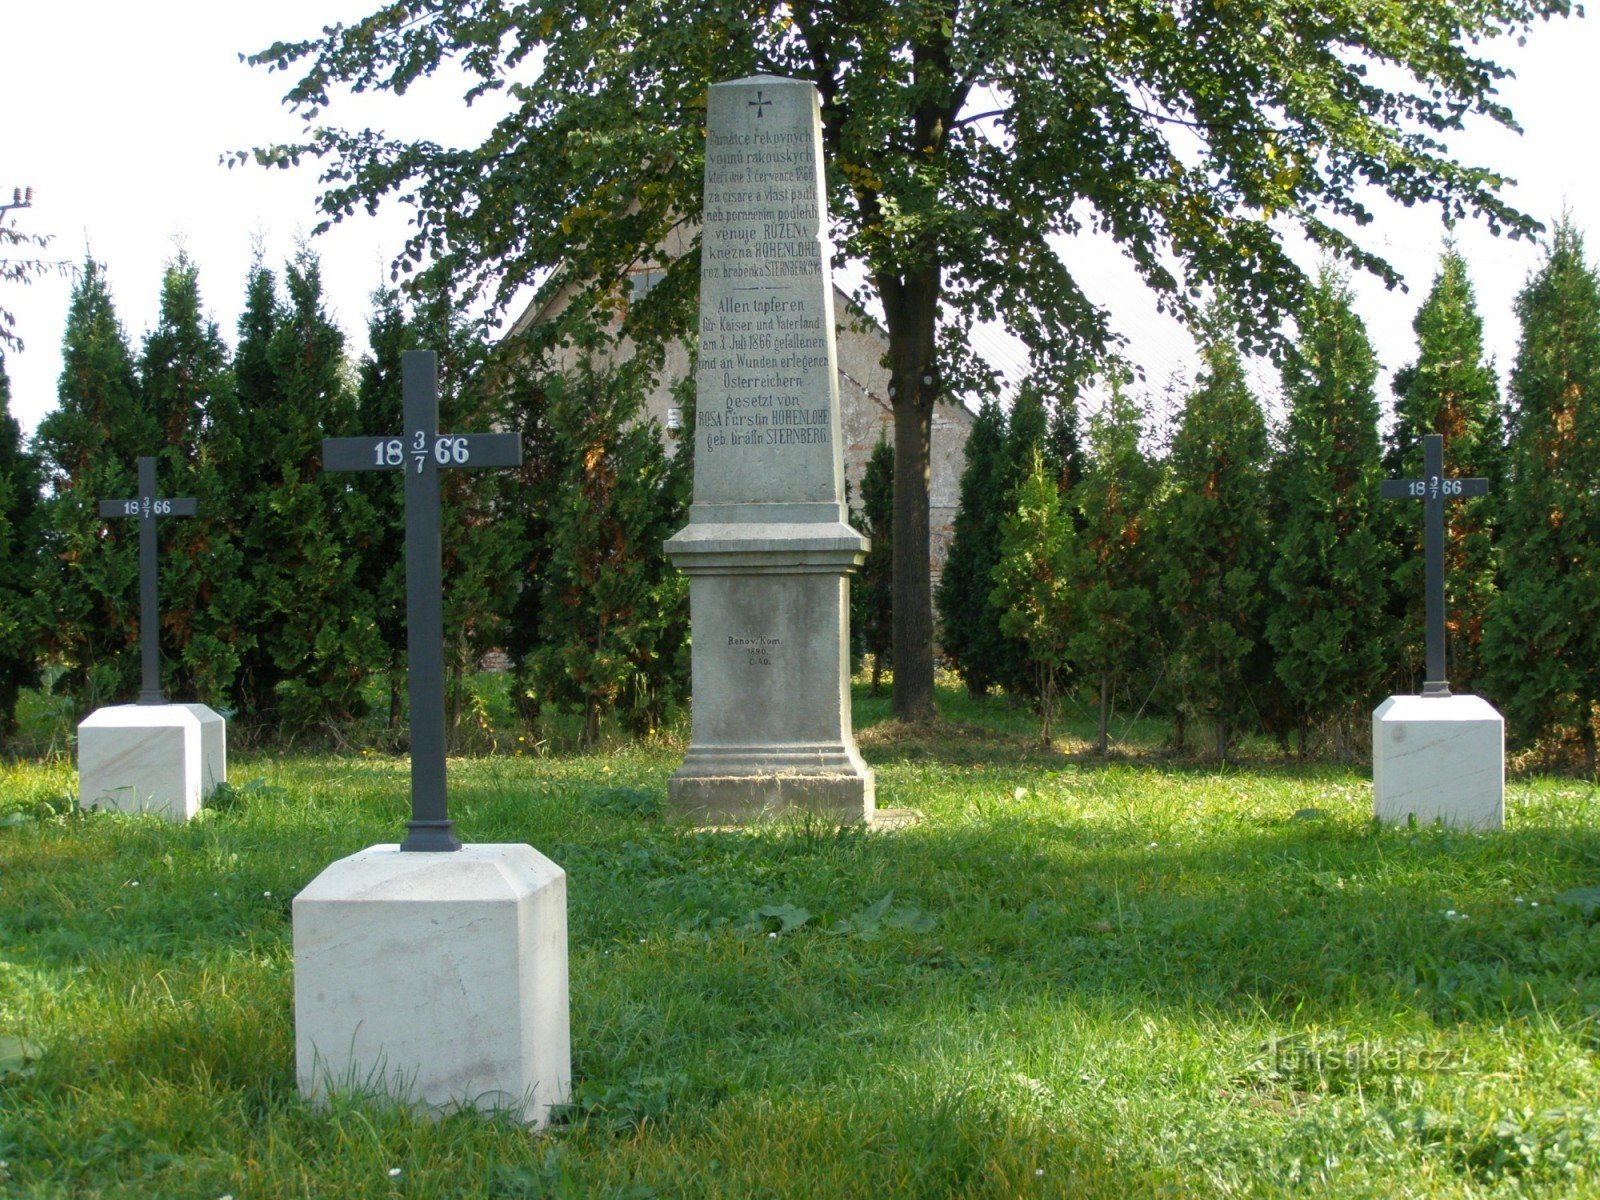 Nedelíště - taistelun sotilaallinen hautausmaa vuonna 1866